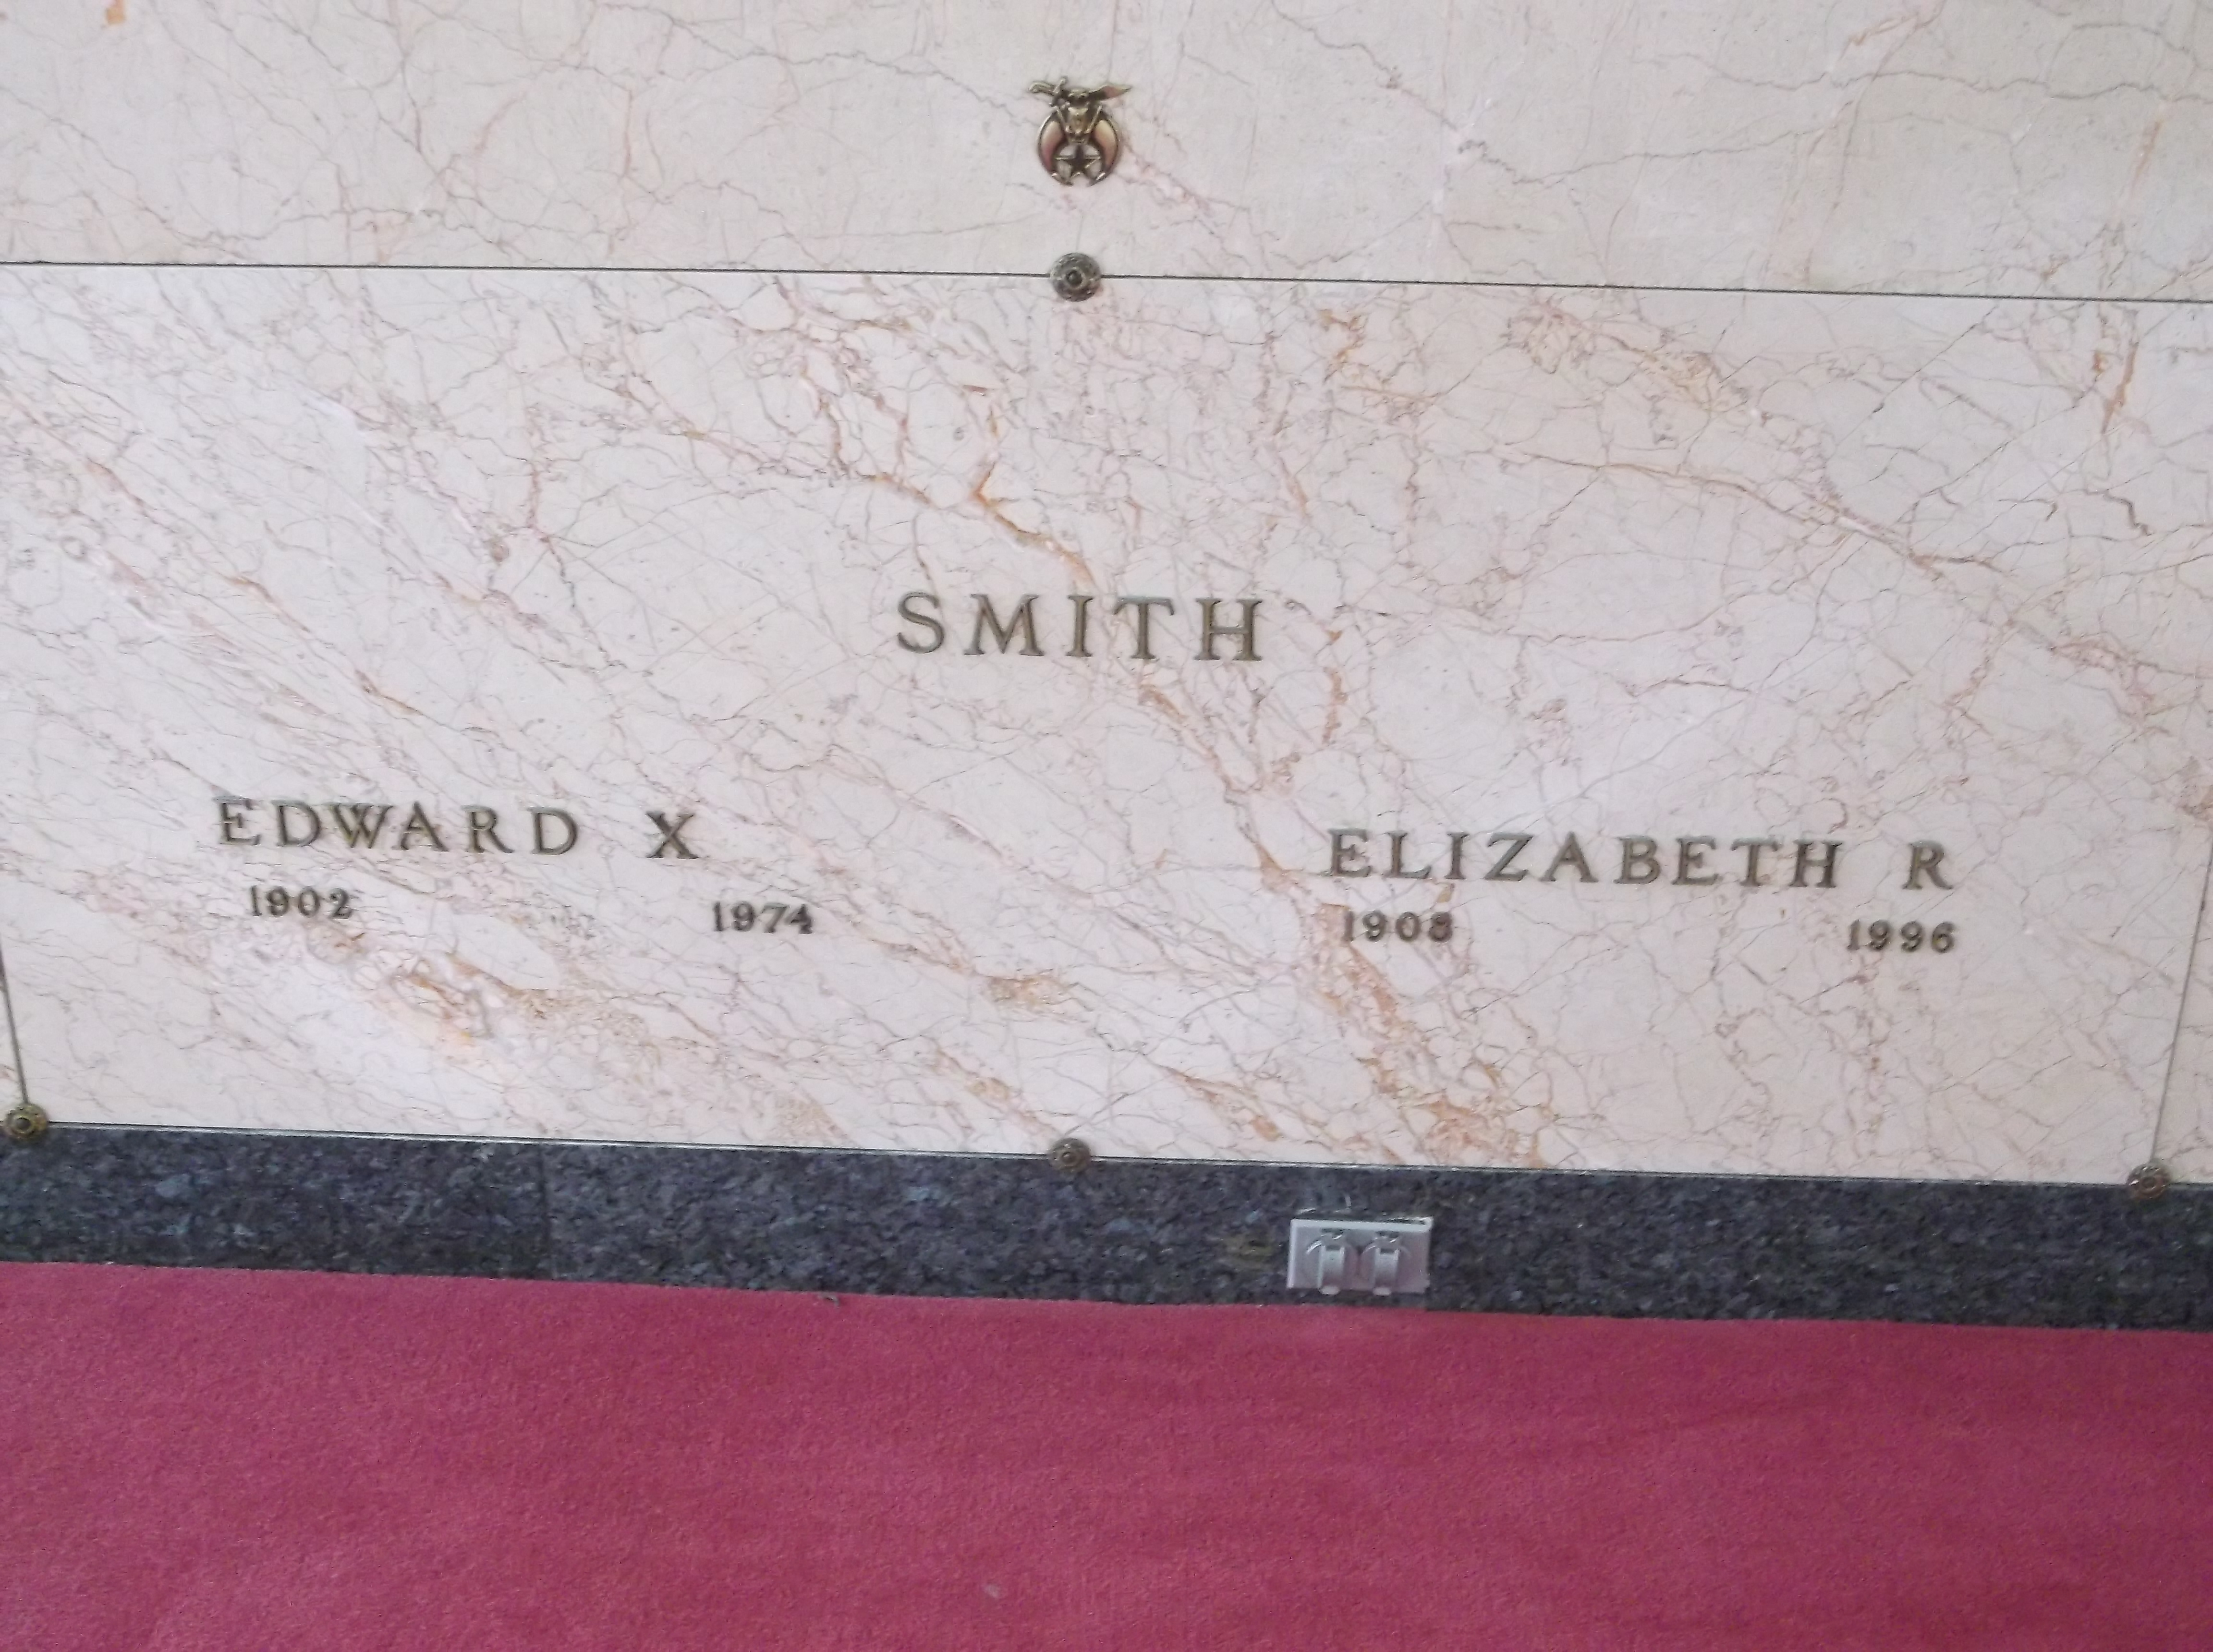 Elizabeth R Smith